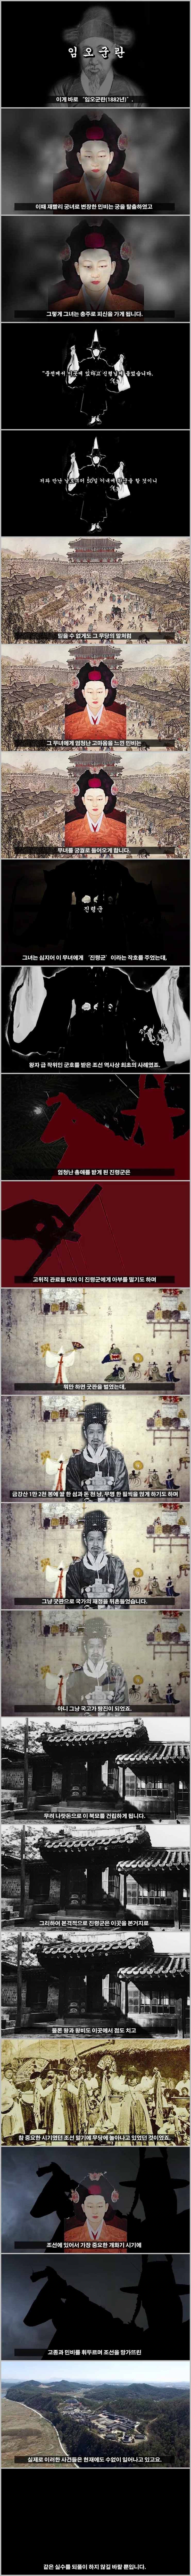 朝鮮語の巫女にハマったミンビとコジョン(高宗)の物語.jpg